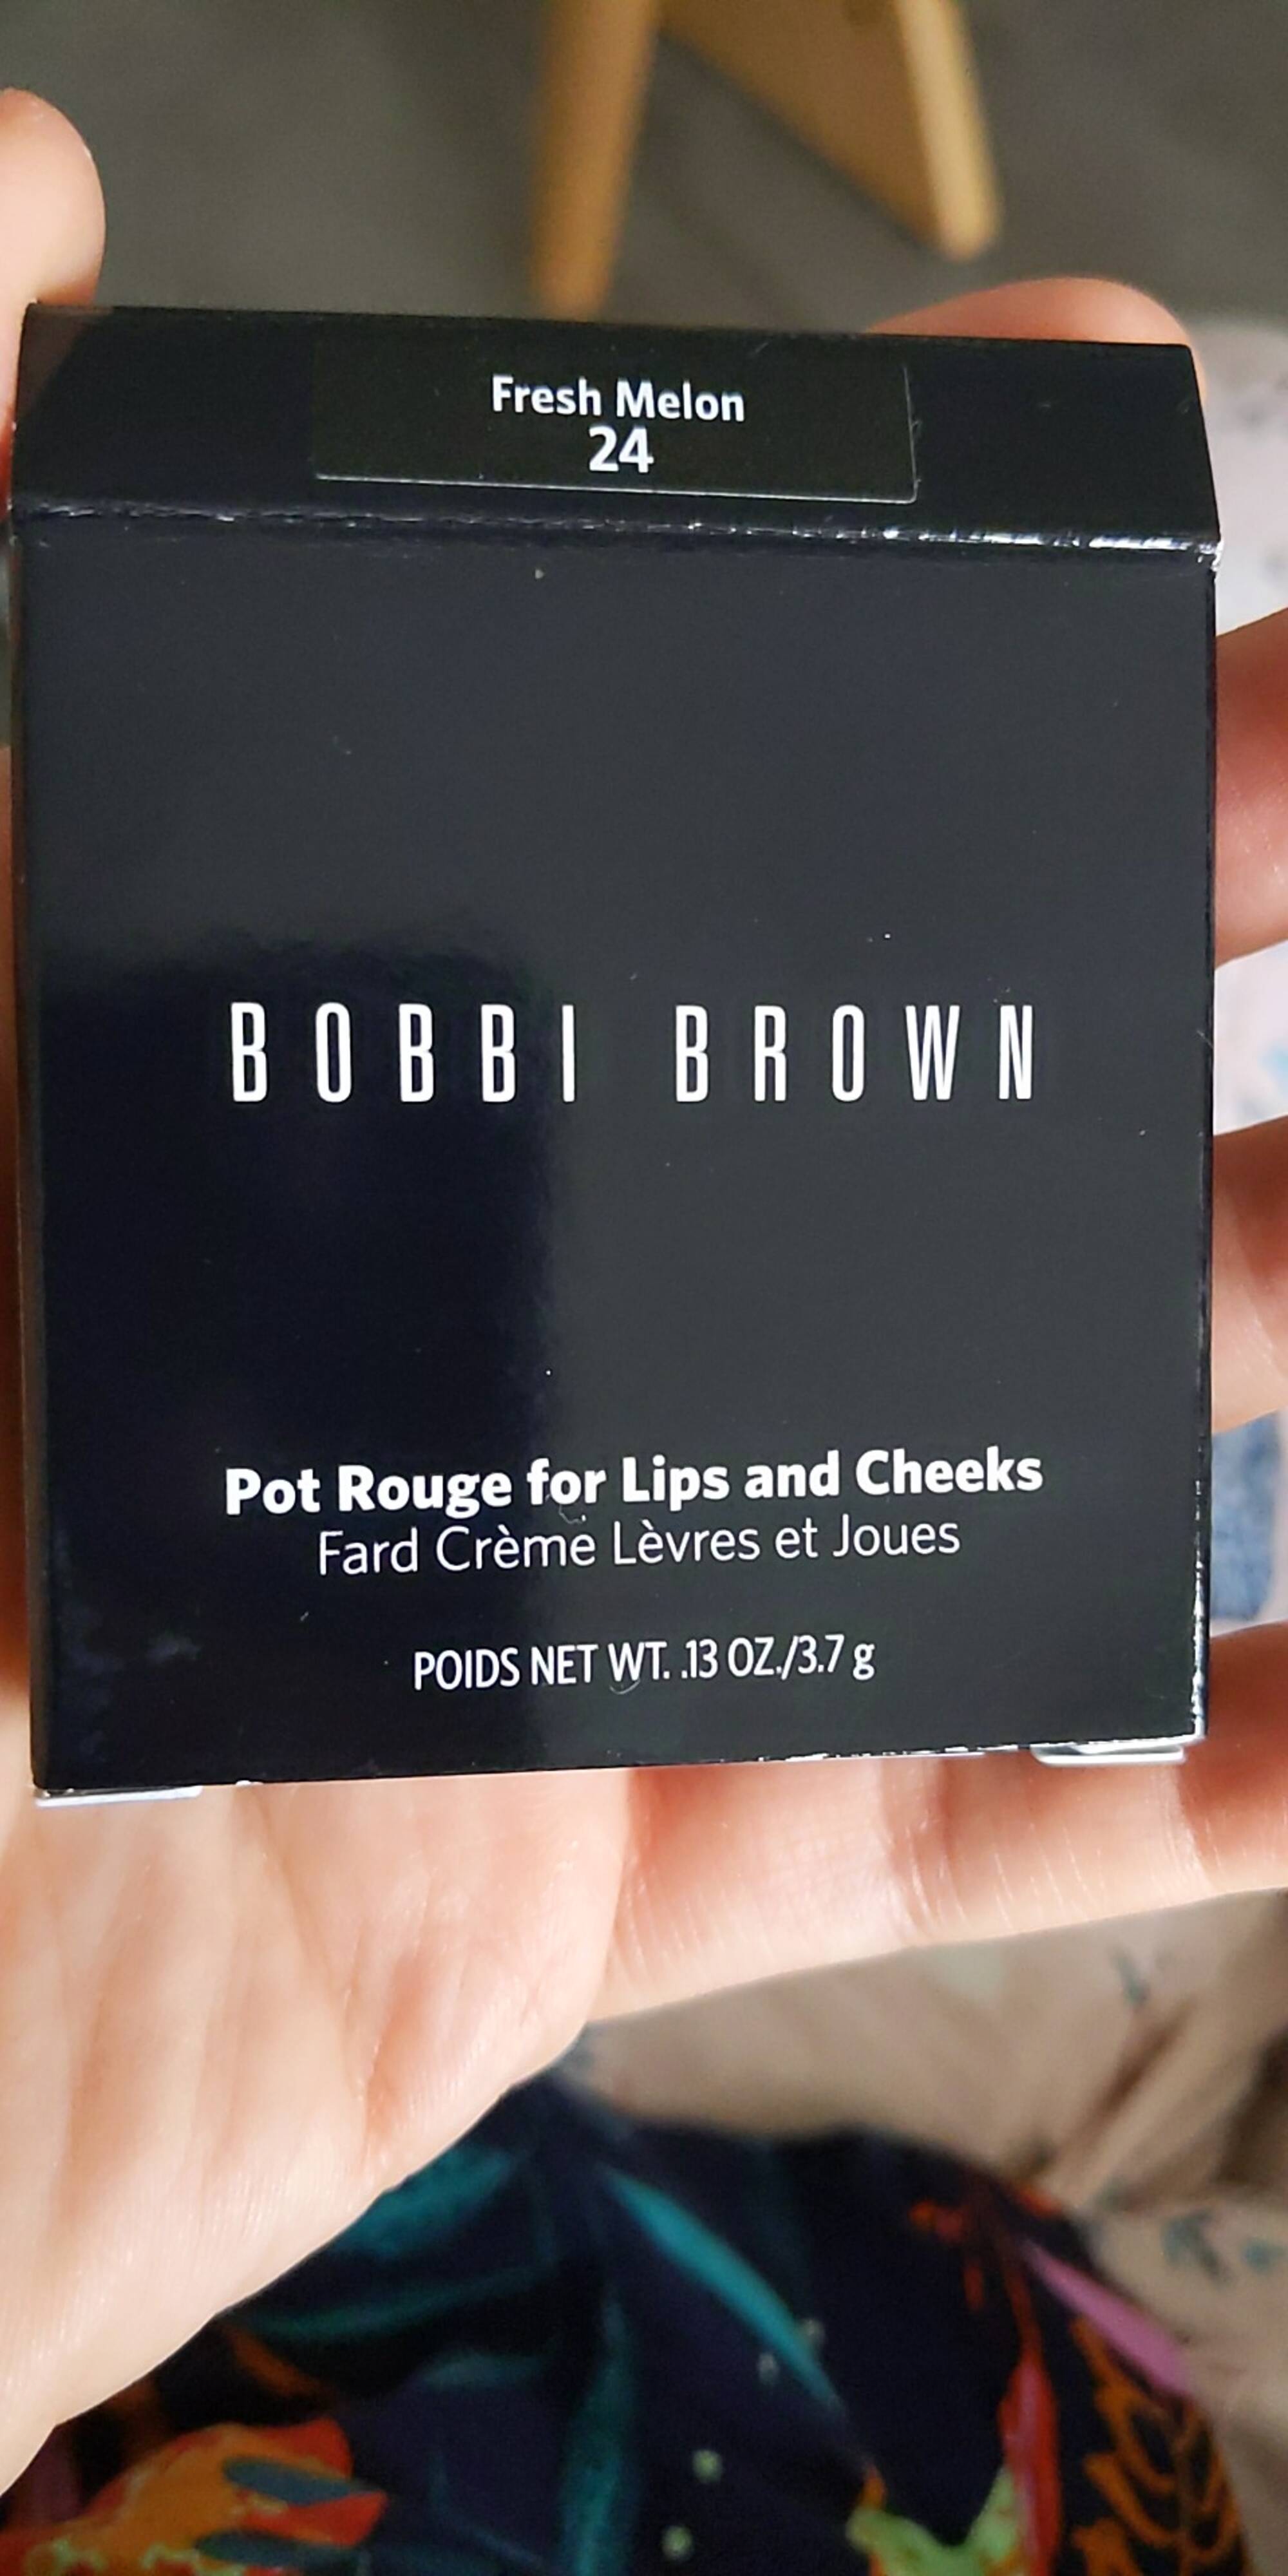 BOBBI BROWN - Fresh Melon 24 - Pot rouges pour lèvres et les joues